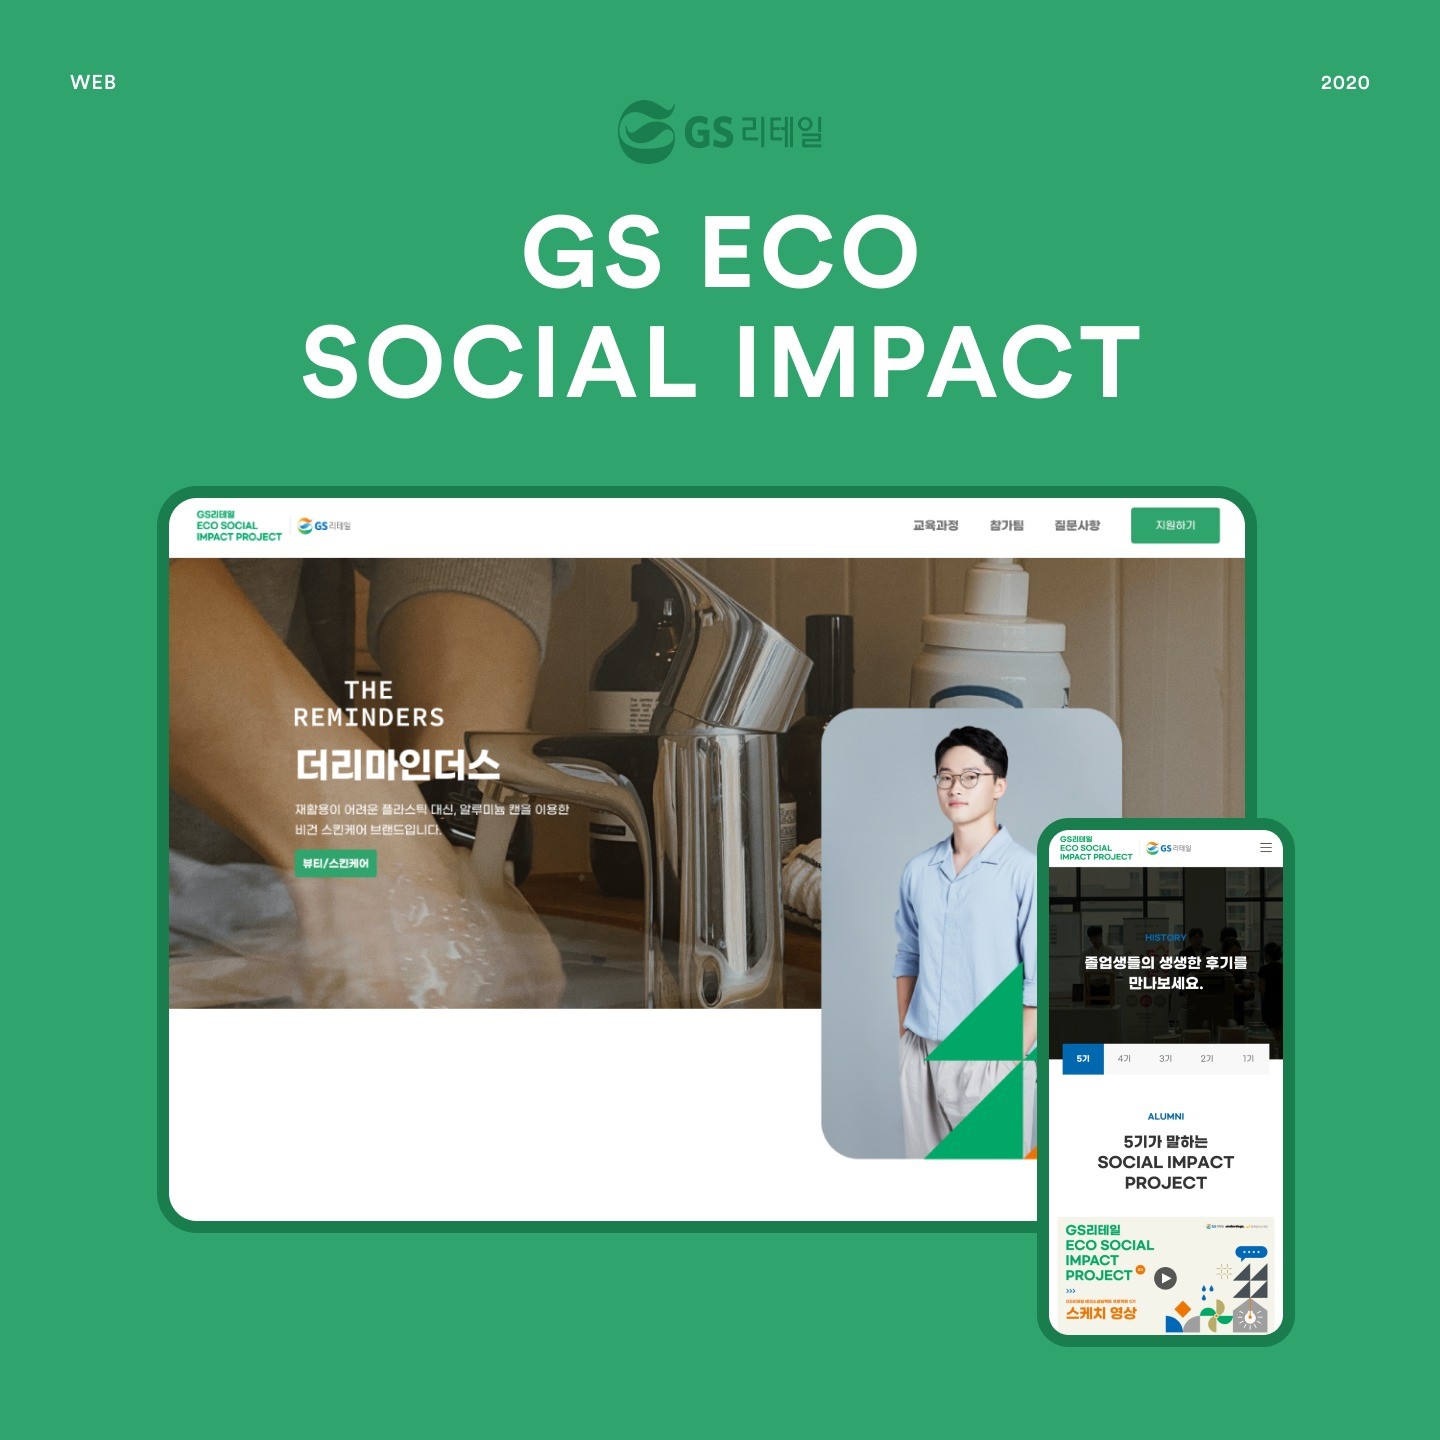 포트폴리오-GS 리테일 ECO social impact 성과공유회 페이지 제작